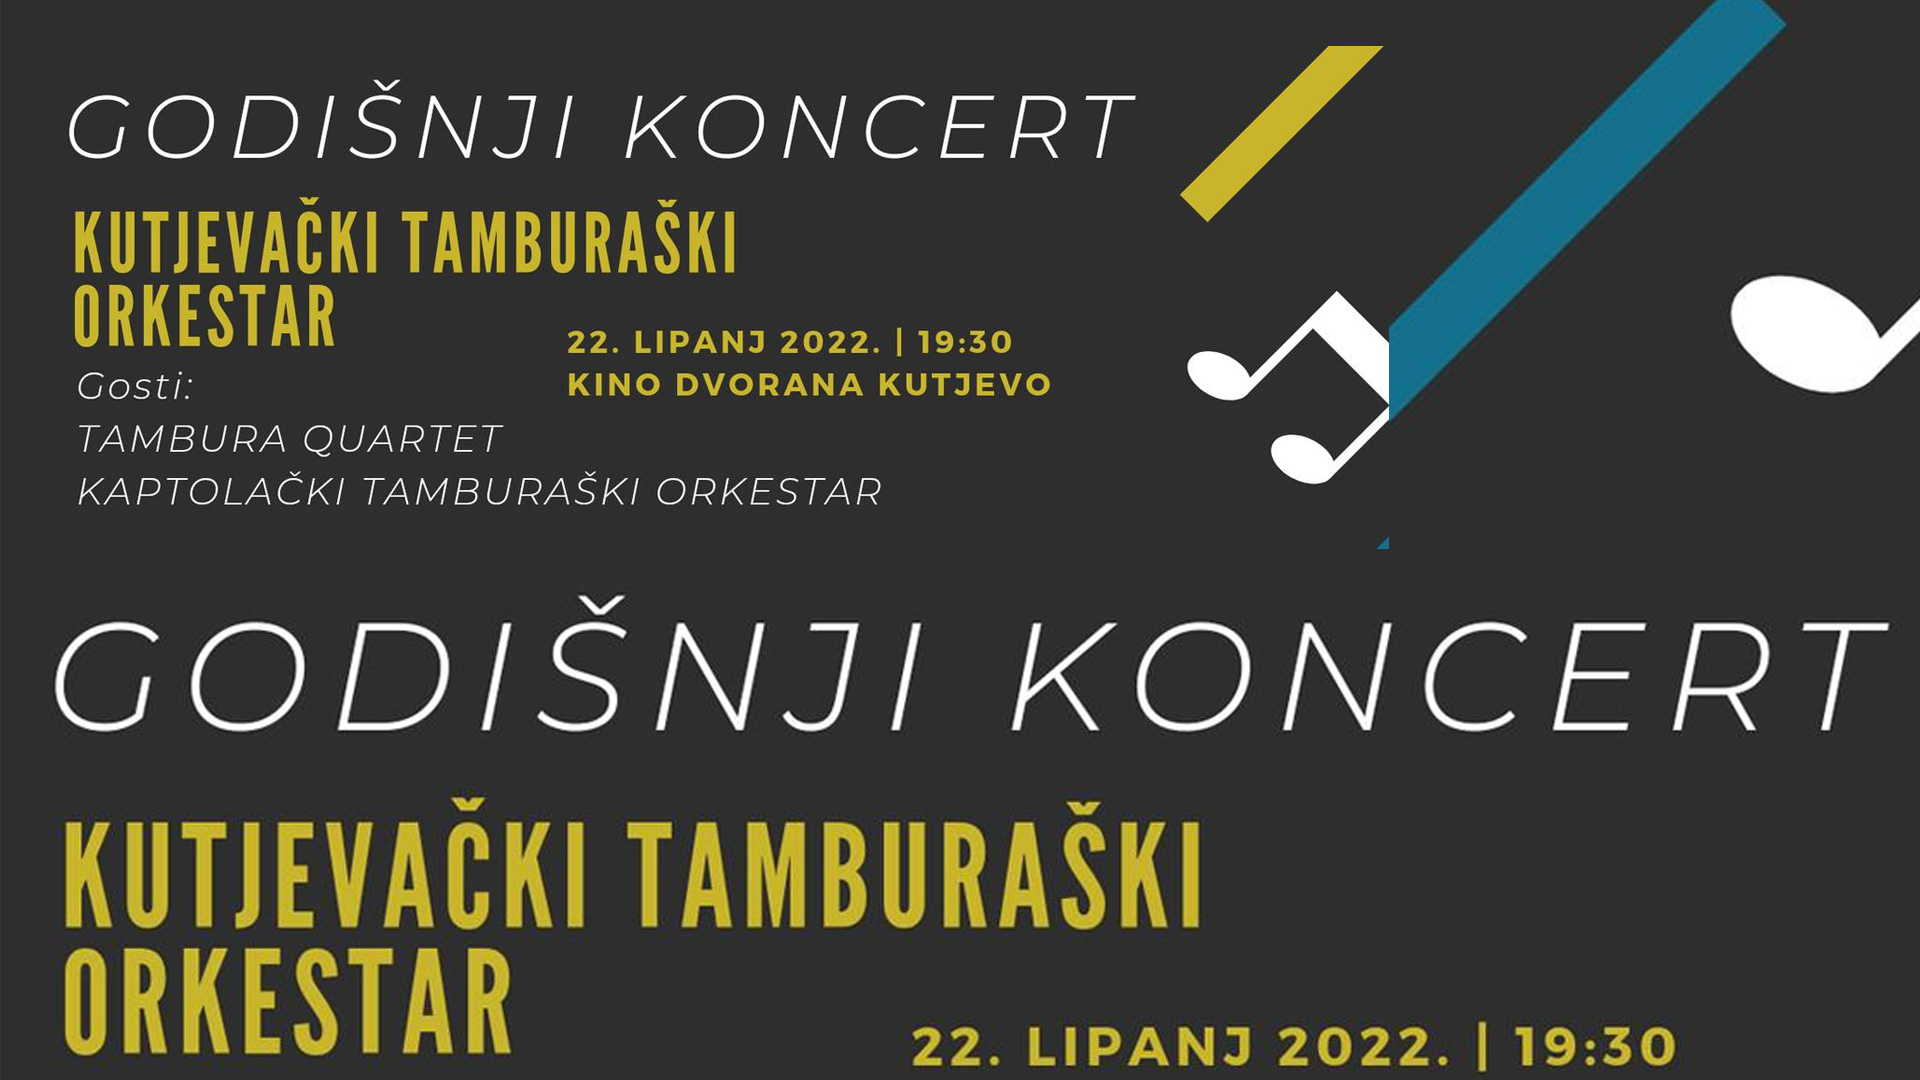 Požega.eu | Godišnji koncert Kutjevačkog tamburaškog orkestra: Srijeda 22. lipnja 2022. u 19:30 sati - Kino dvorana Kutjevo